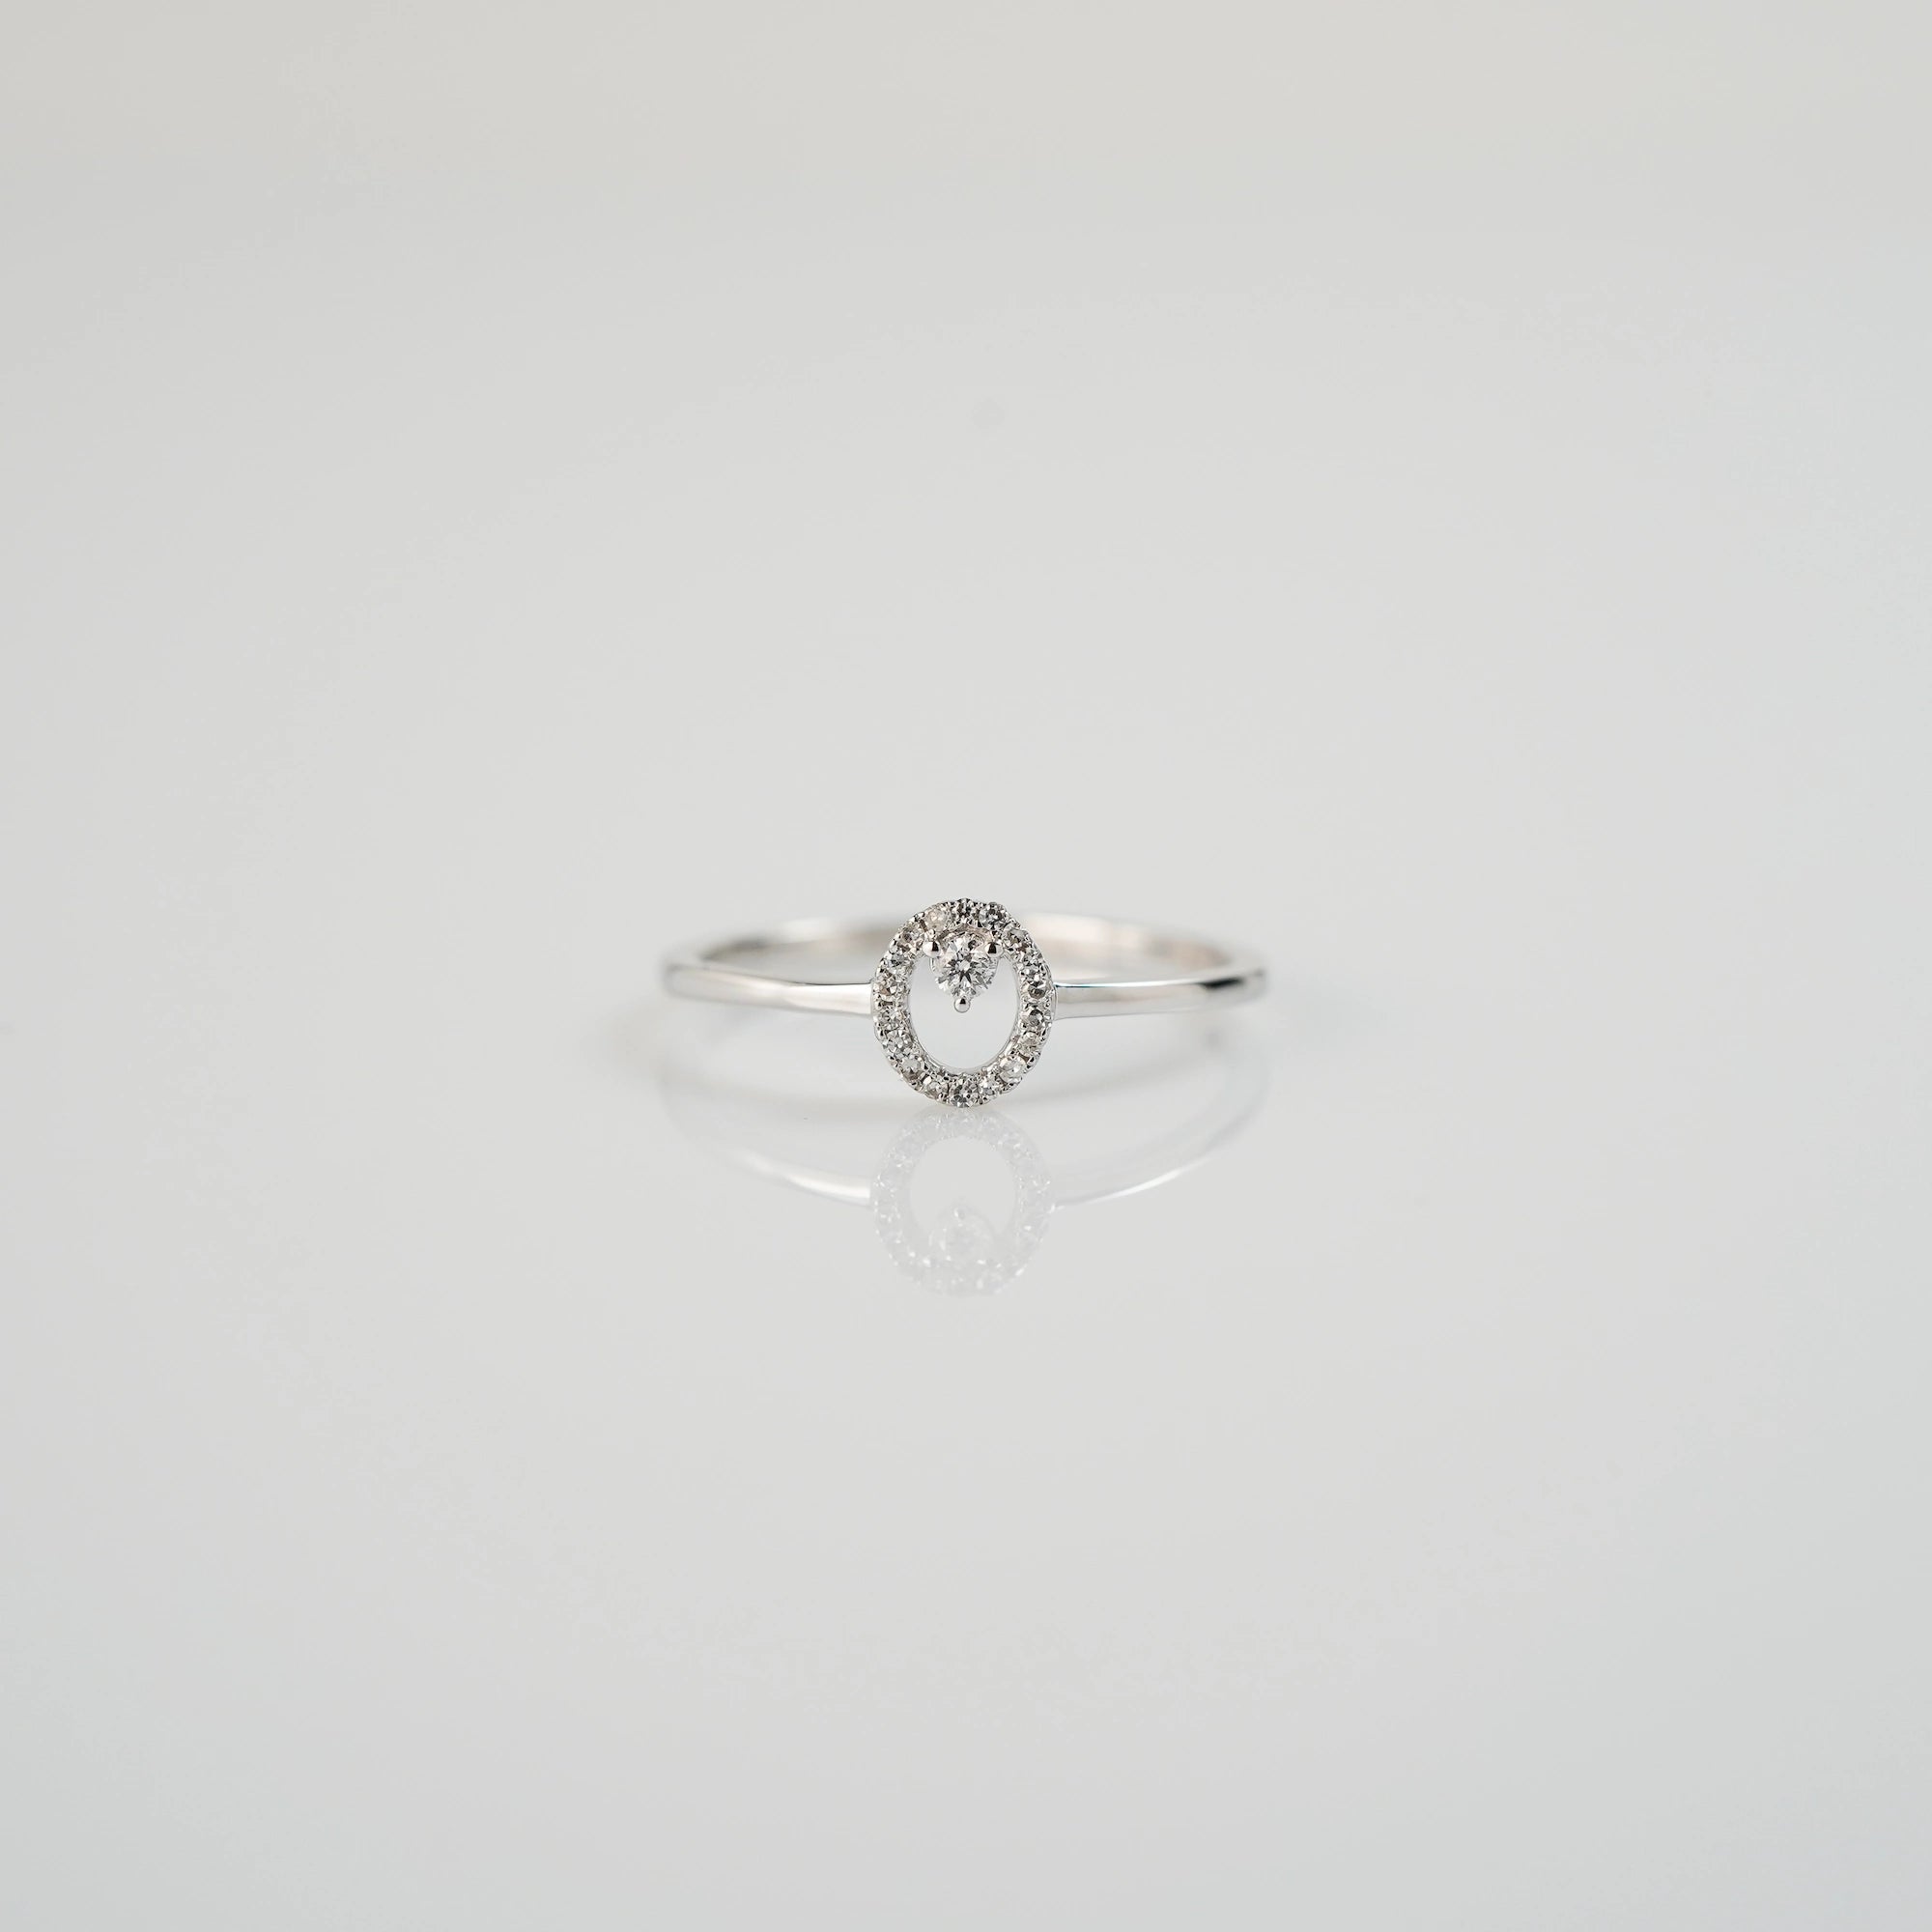 Produktfotografie des liegenden "Fine Oval" Verlobungsrings aus Weißgold, der mit einem ovalen Diamantkranz verziert wurde